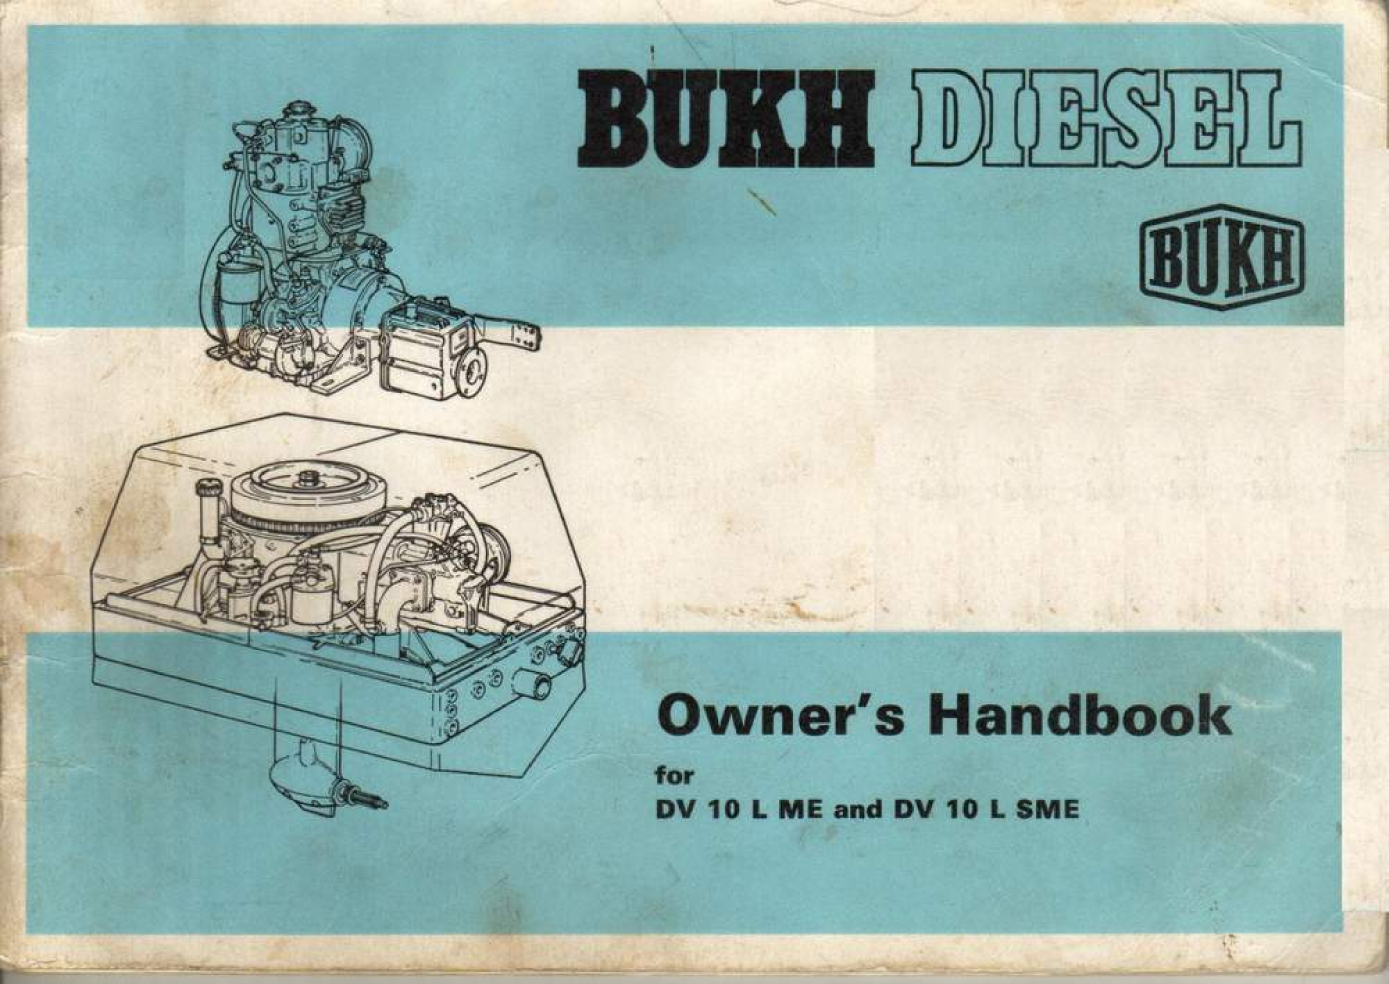  Bukh  Diesel  Dv10 L  Me  Sme  Owners  Handbook manual page 1